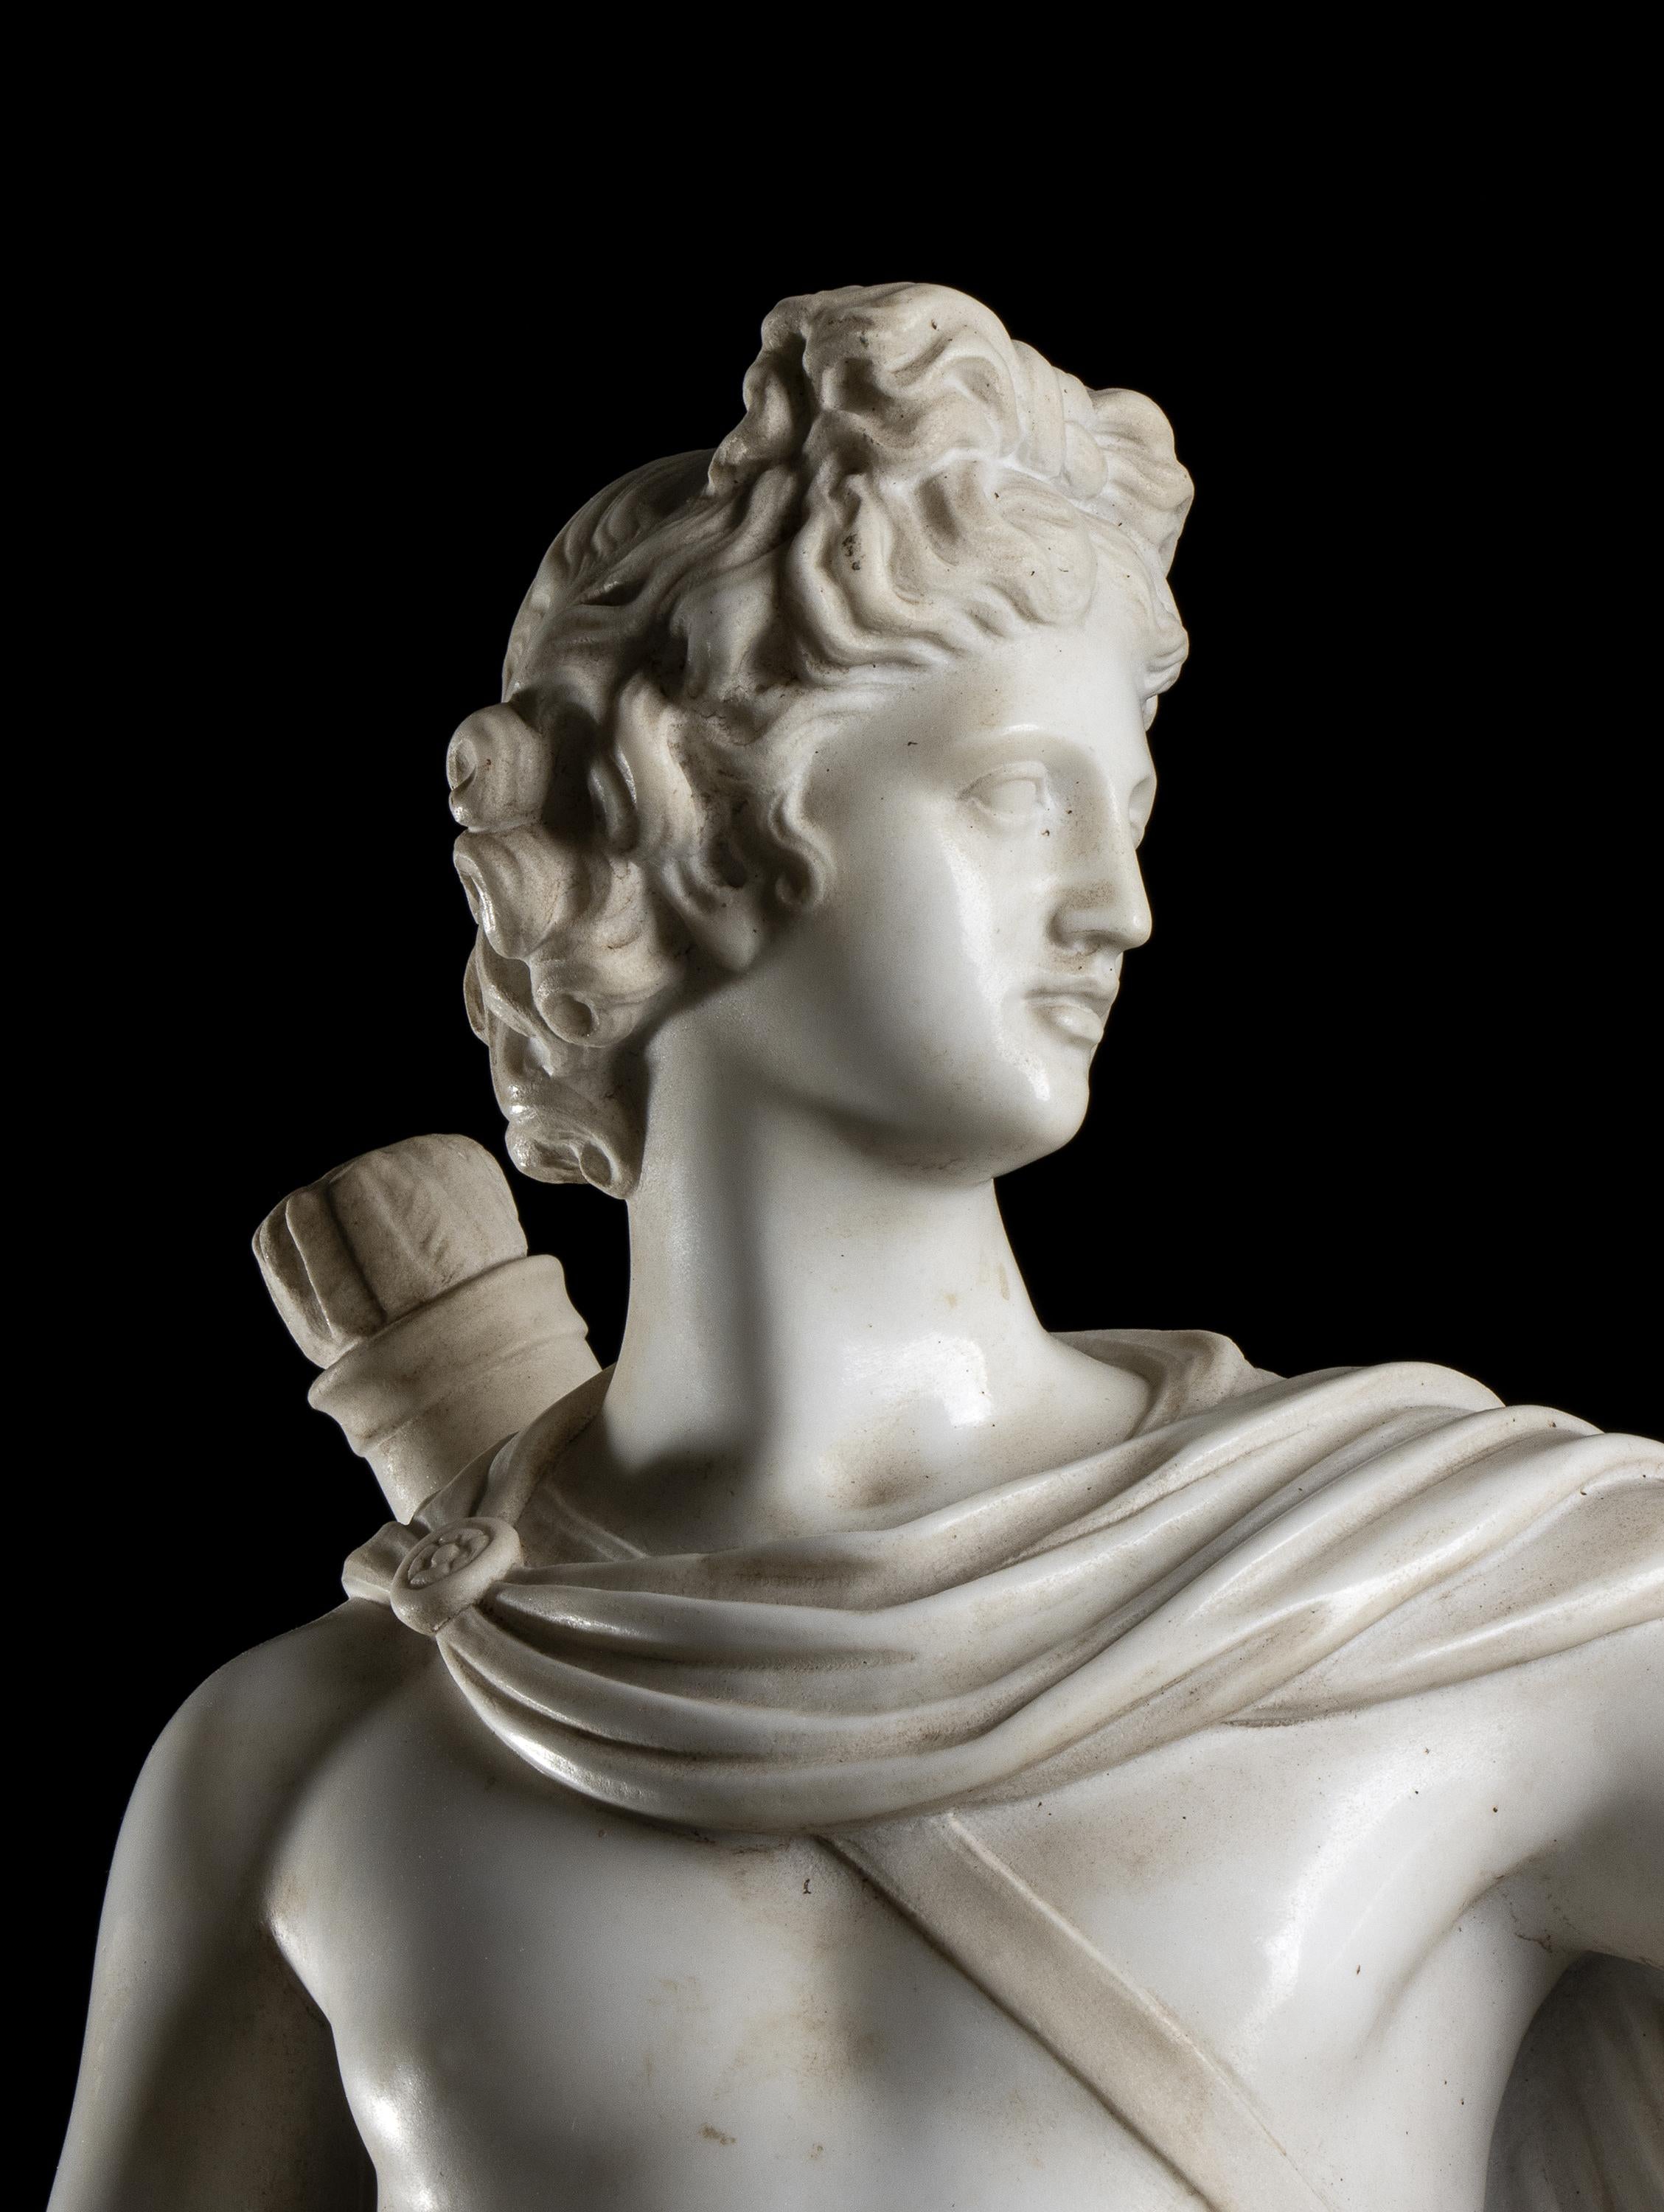  White Statuary Marble Sculpture Apollo Belvedere 19th Classical Grand Tour  8